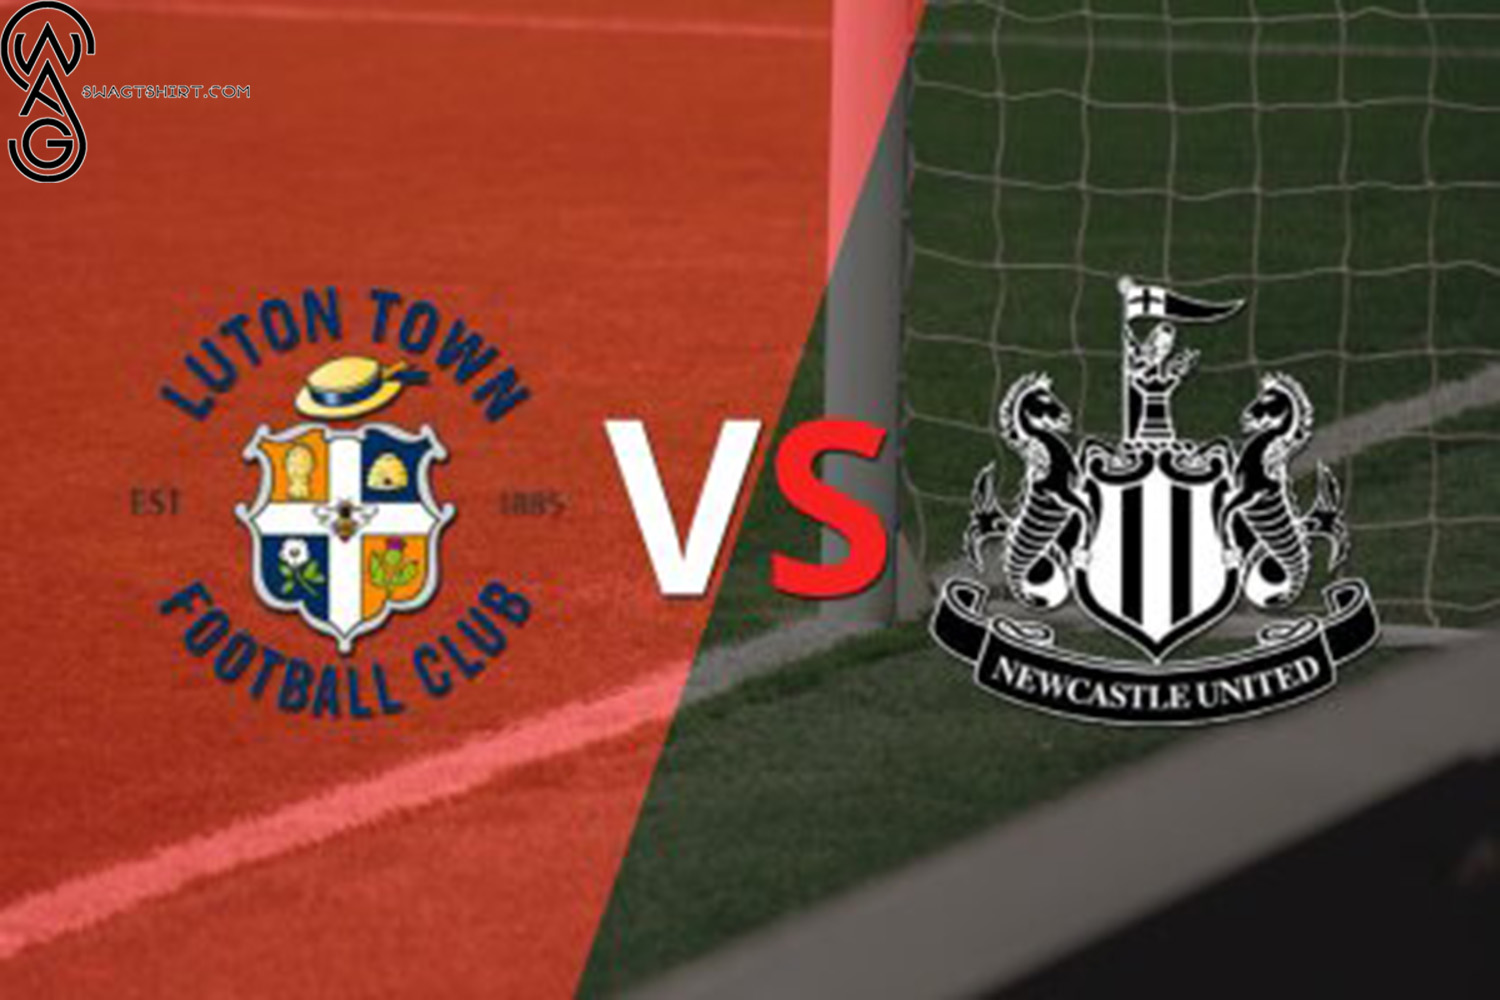 Premier League Thriller Newcastle United vs Luton Town - A Strategic Battle at St. James' Park